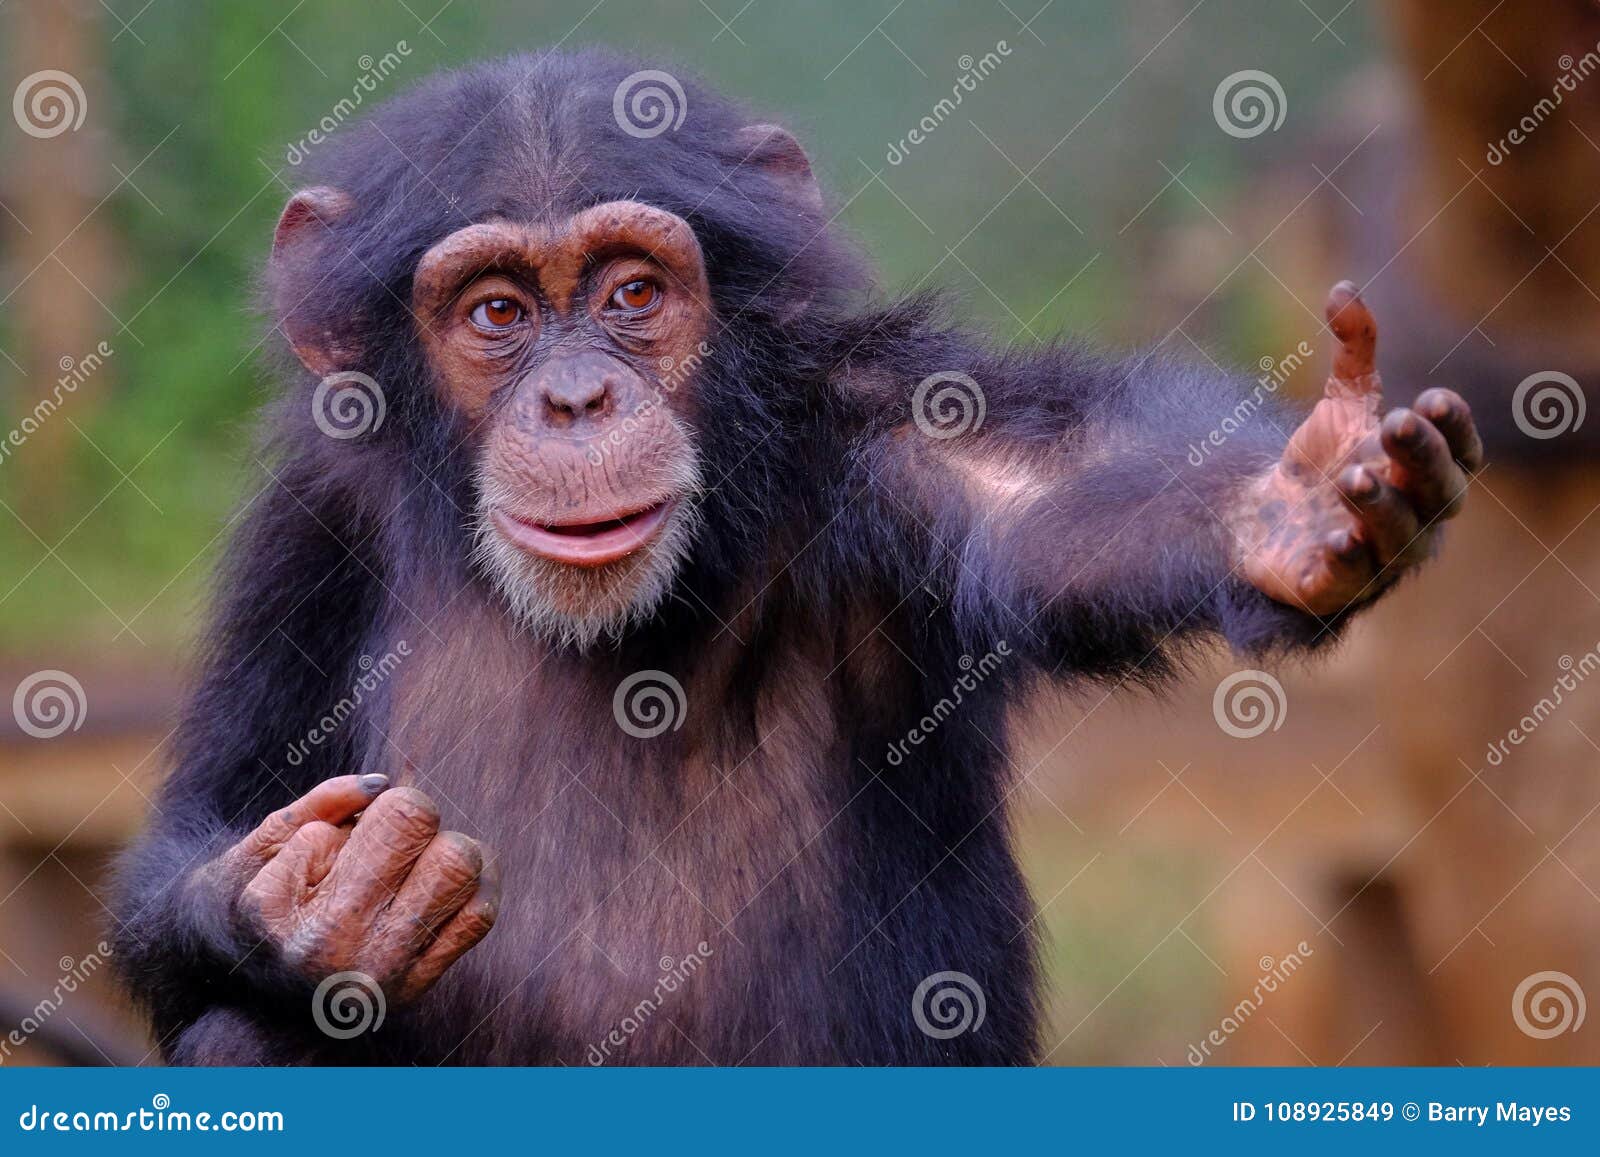 western chimpanzee in sierra leone